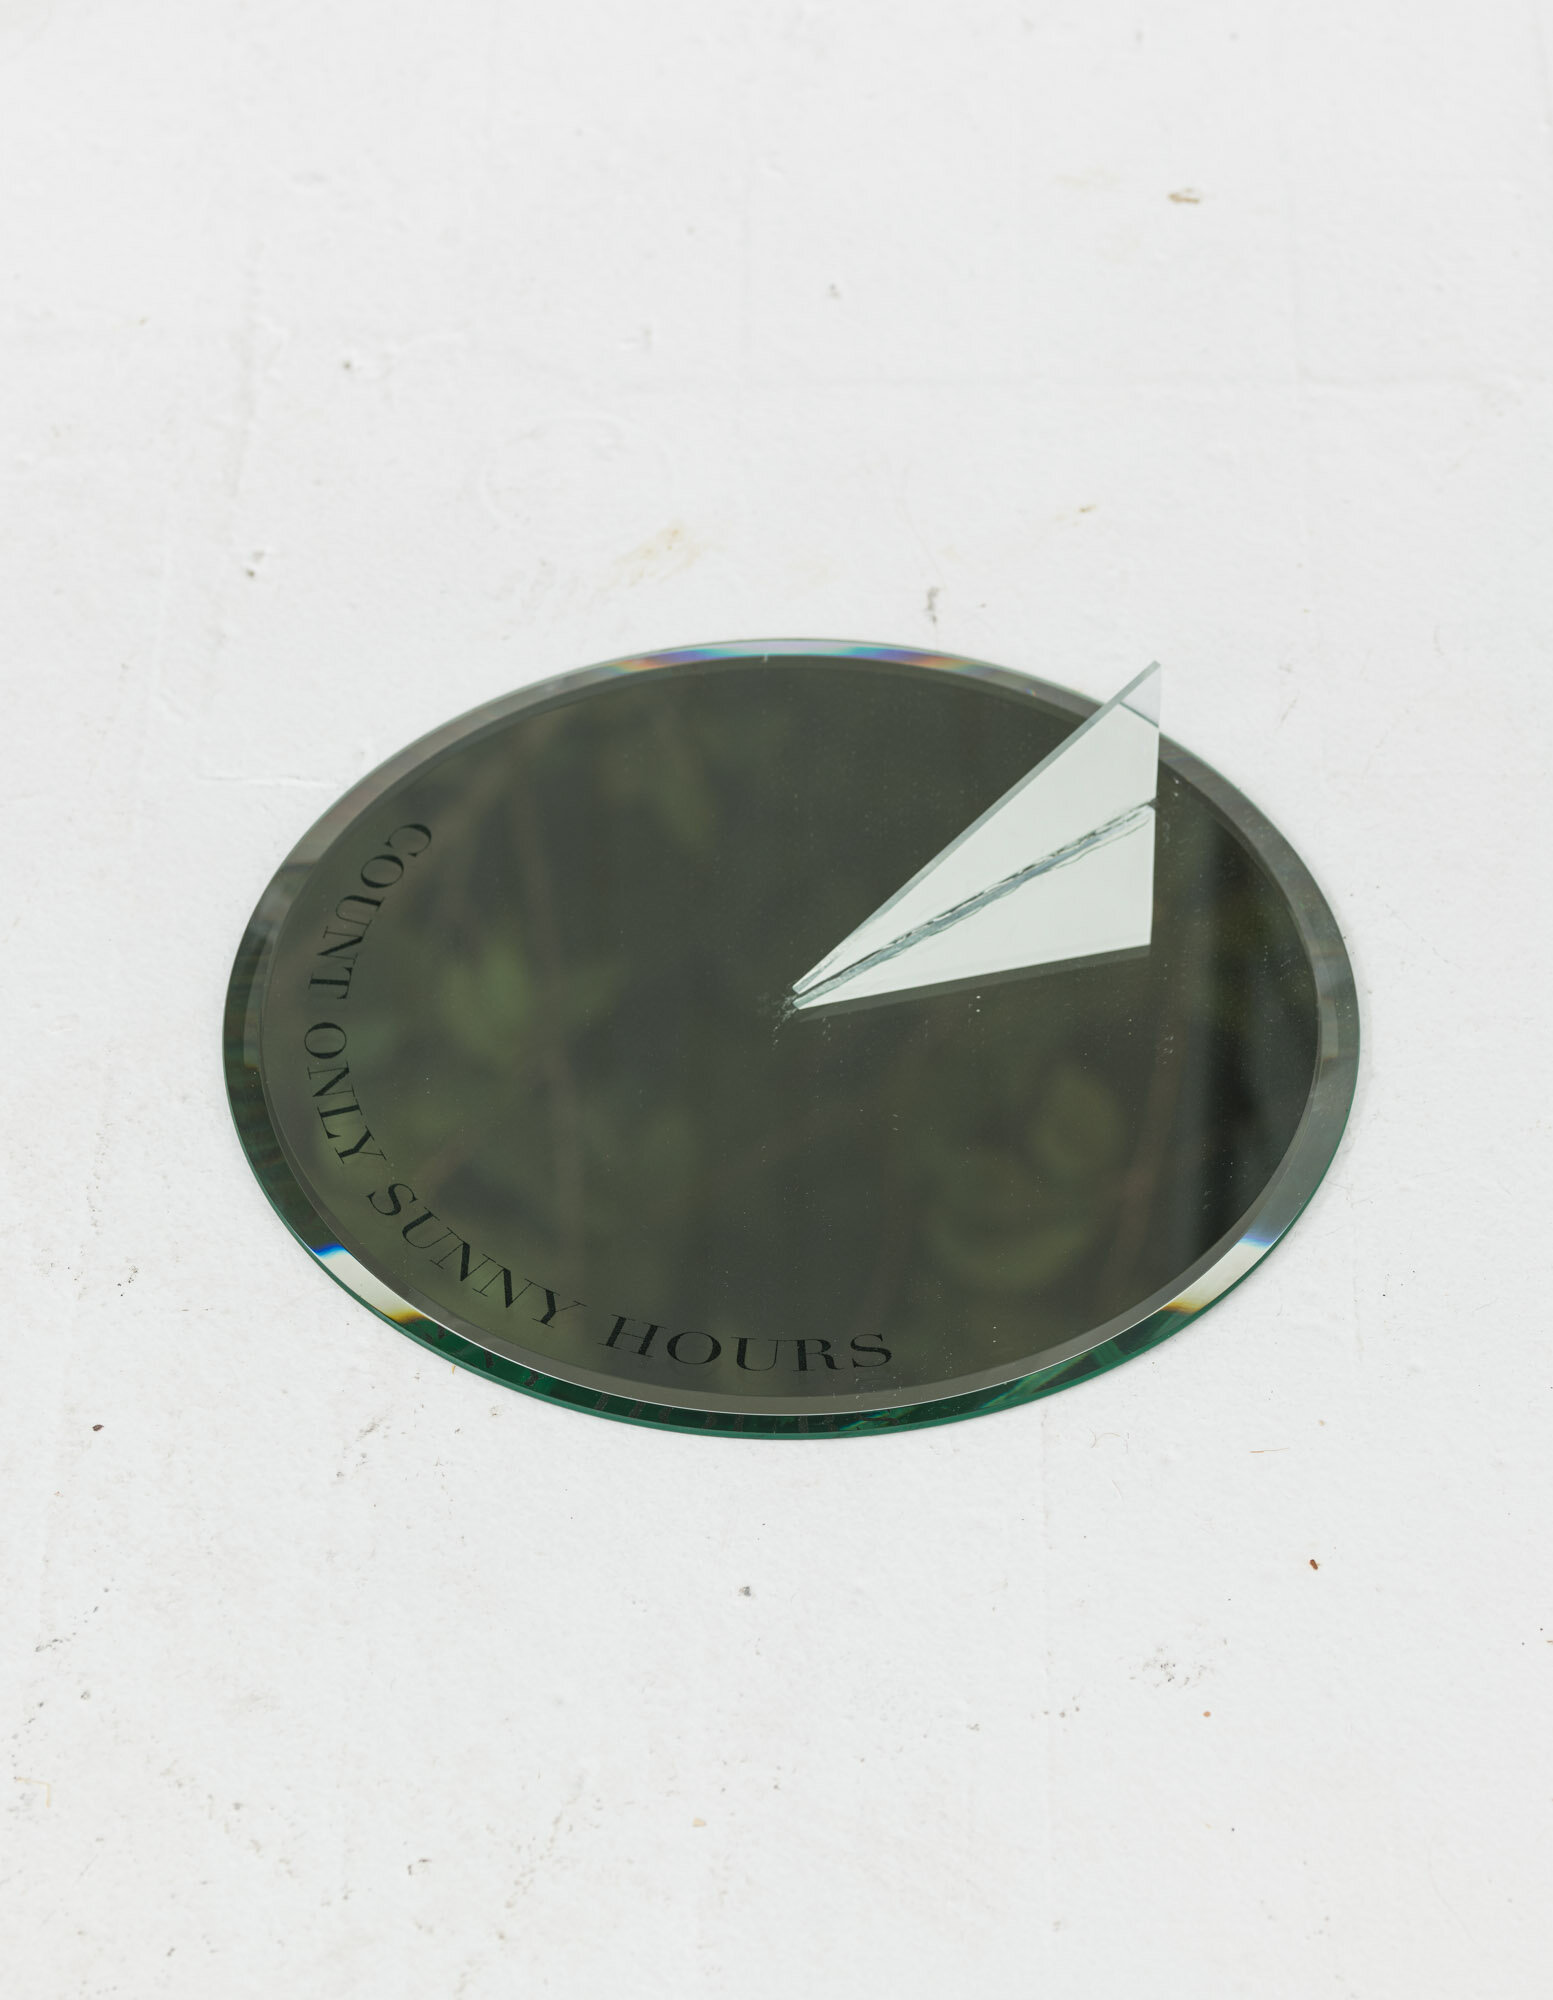  Kalaija Mallery,  Light-Meter (Sundial) ​, engraved mirror, acrylic, 12” diameter 